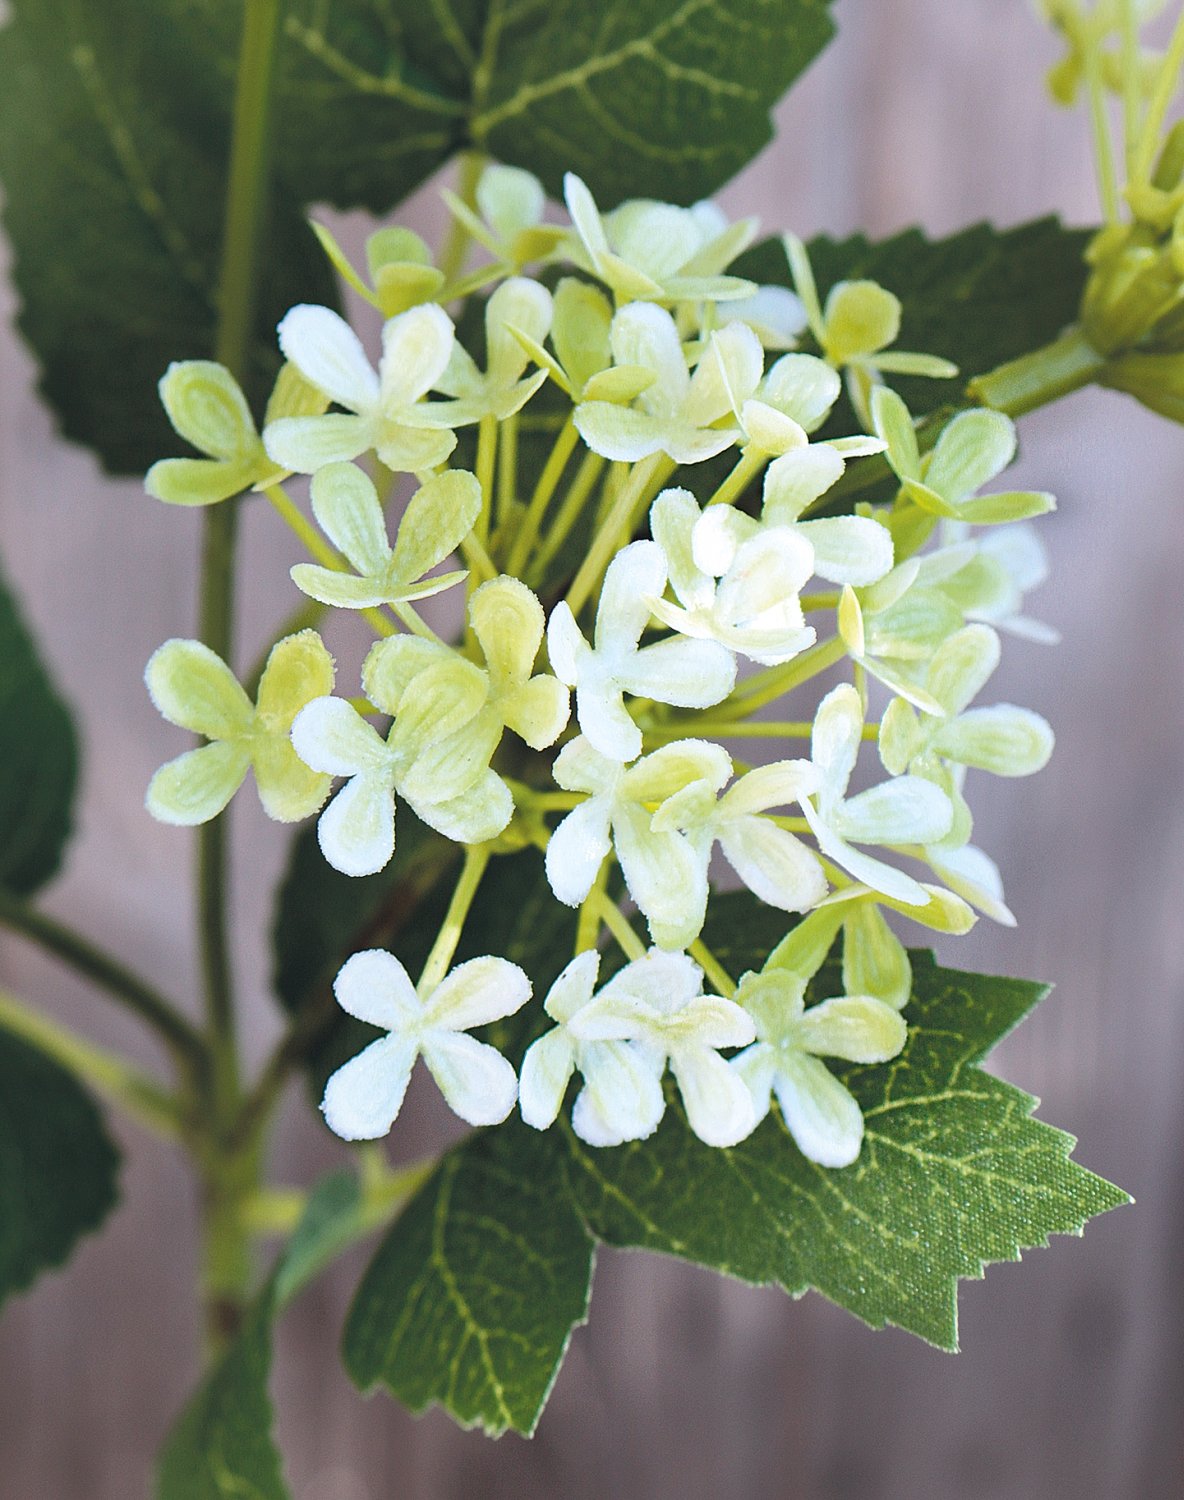 Rametto fiorito artificiale, 40 cm, bianco-crema